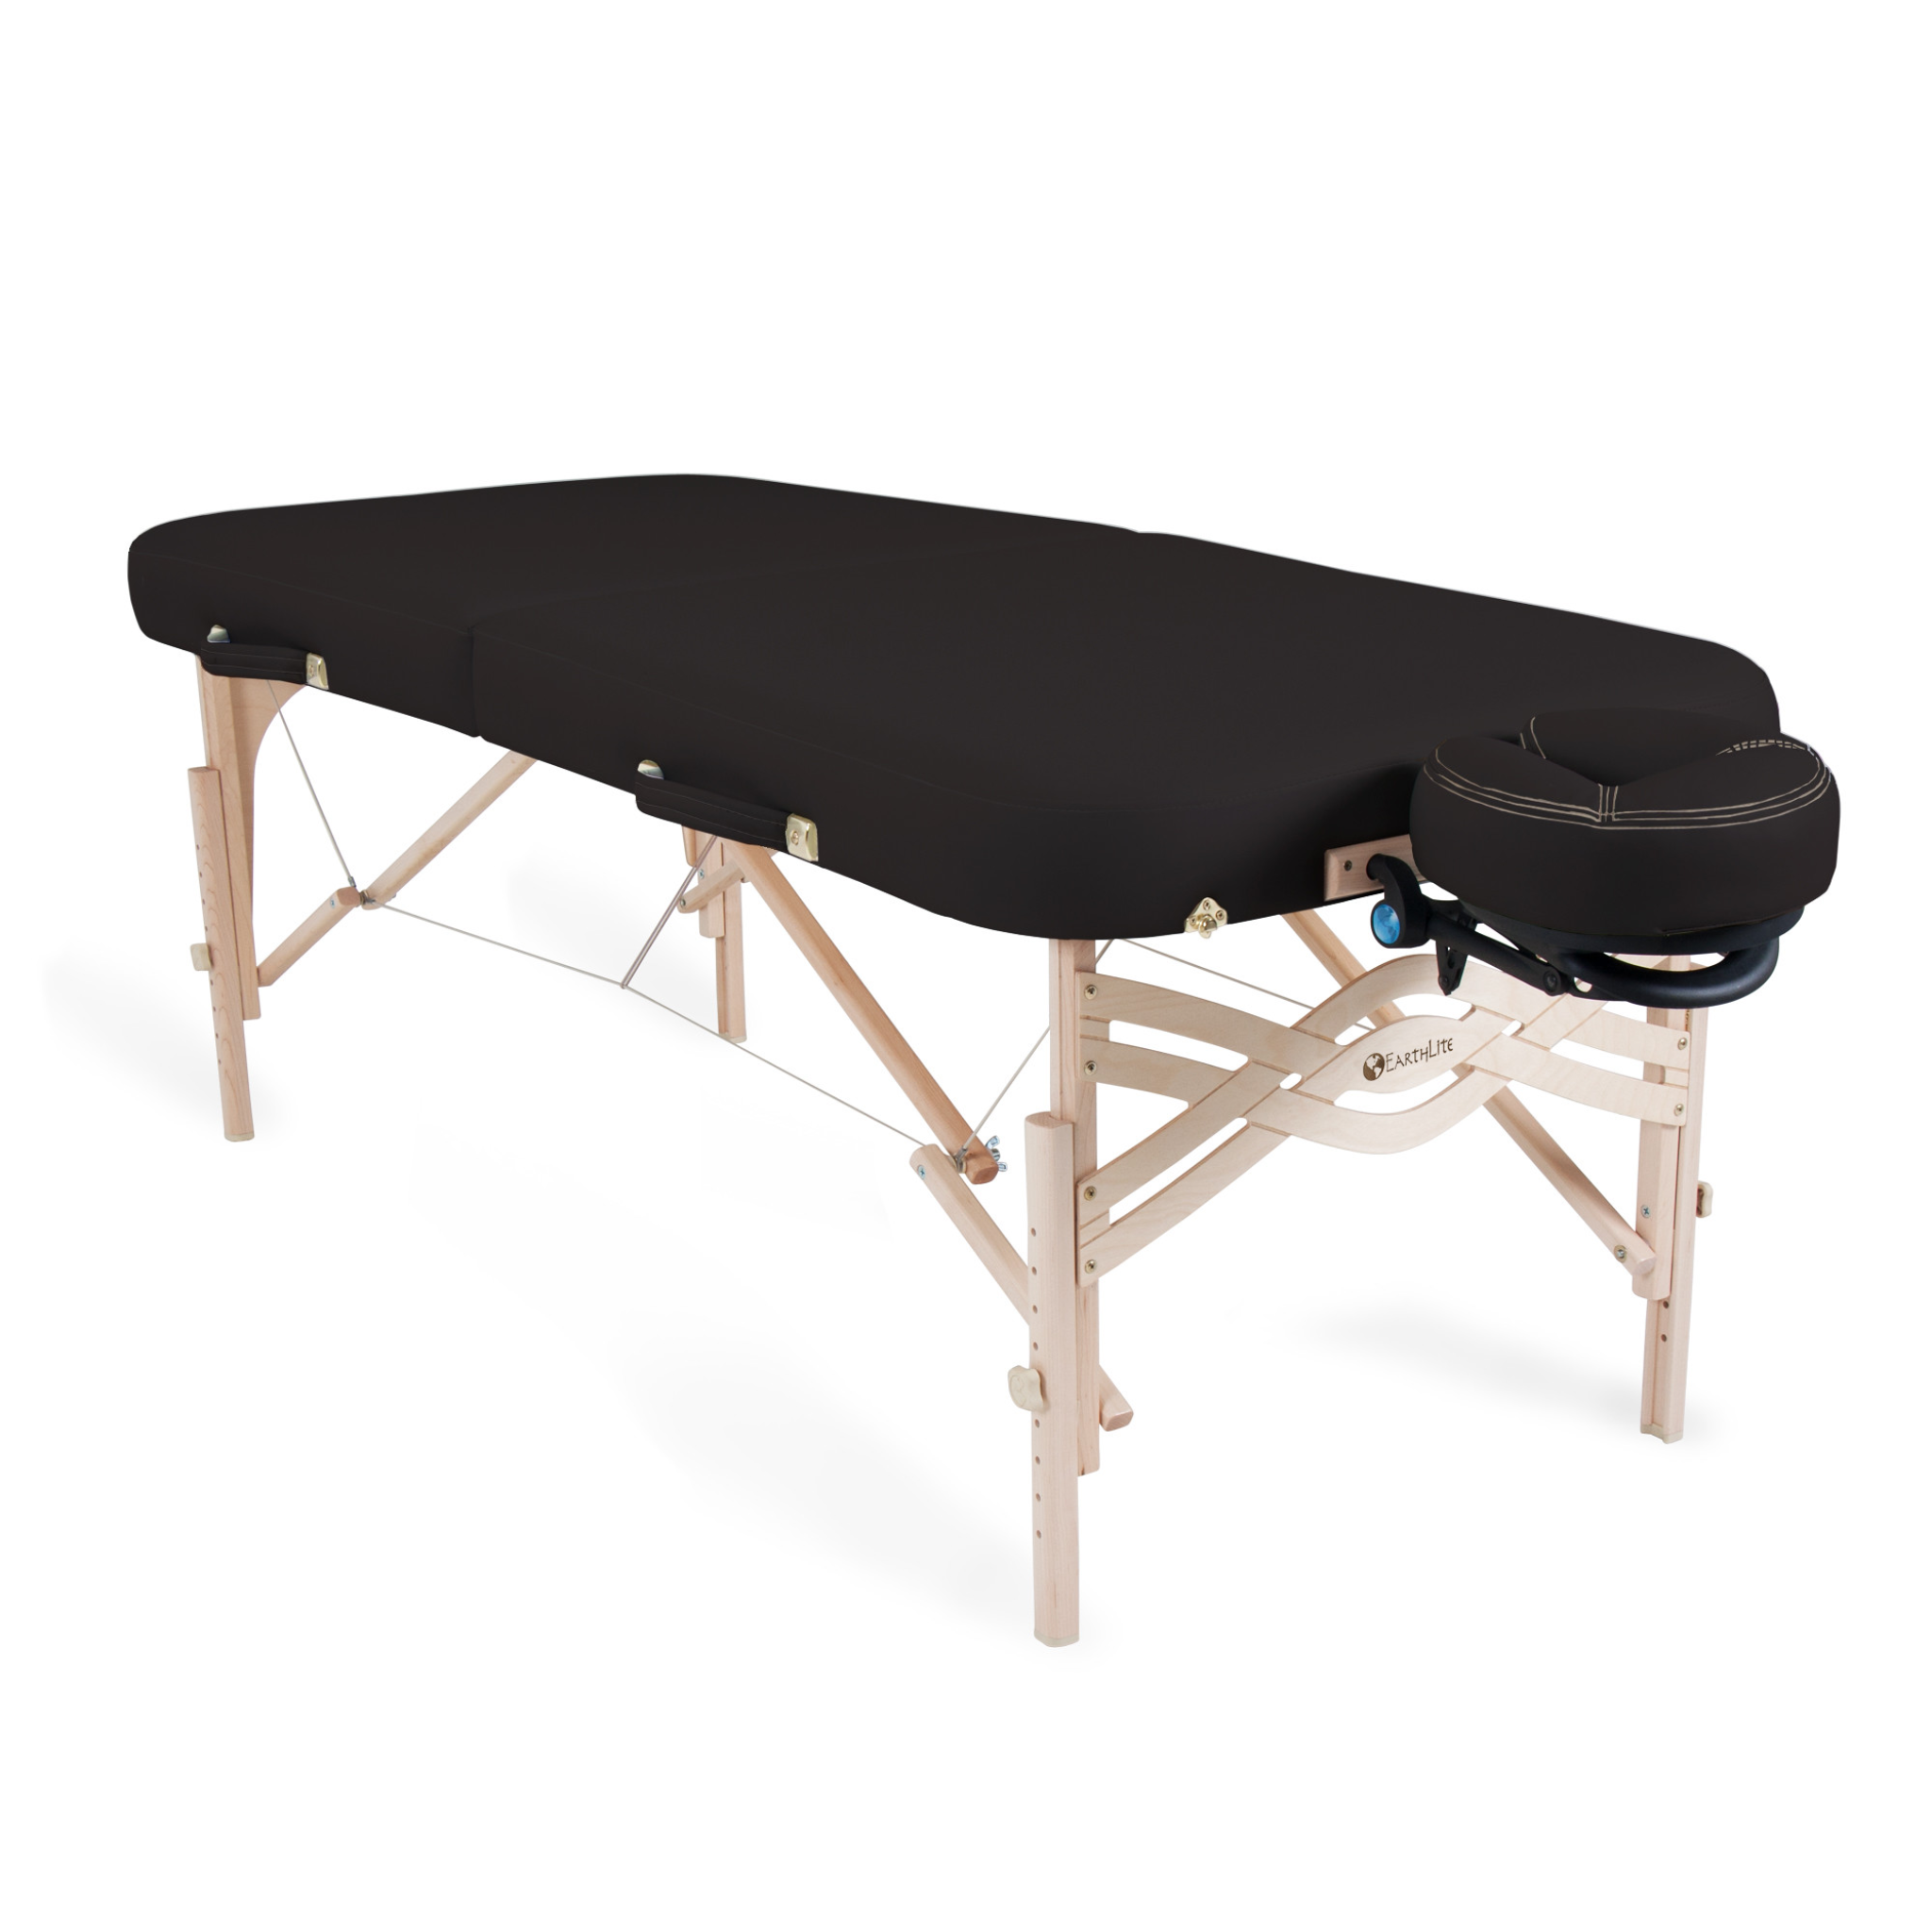 EarthLite Spirit Massage Table Black